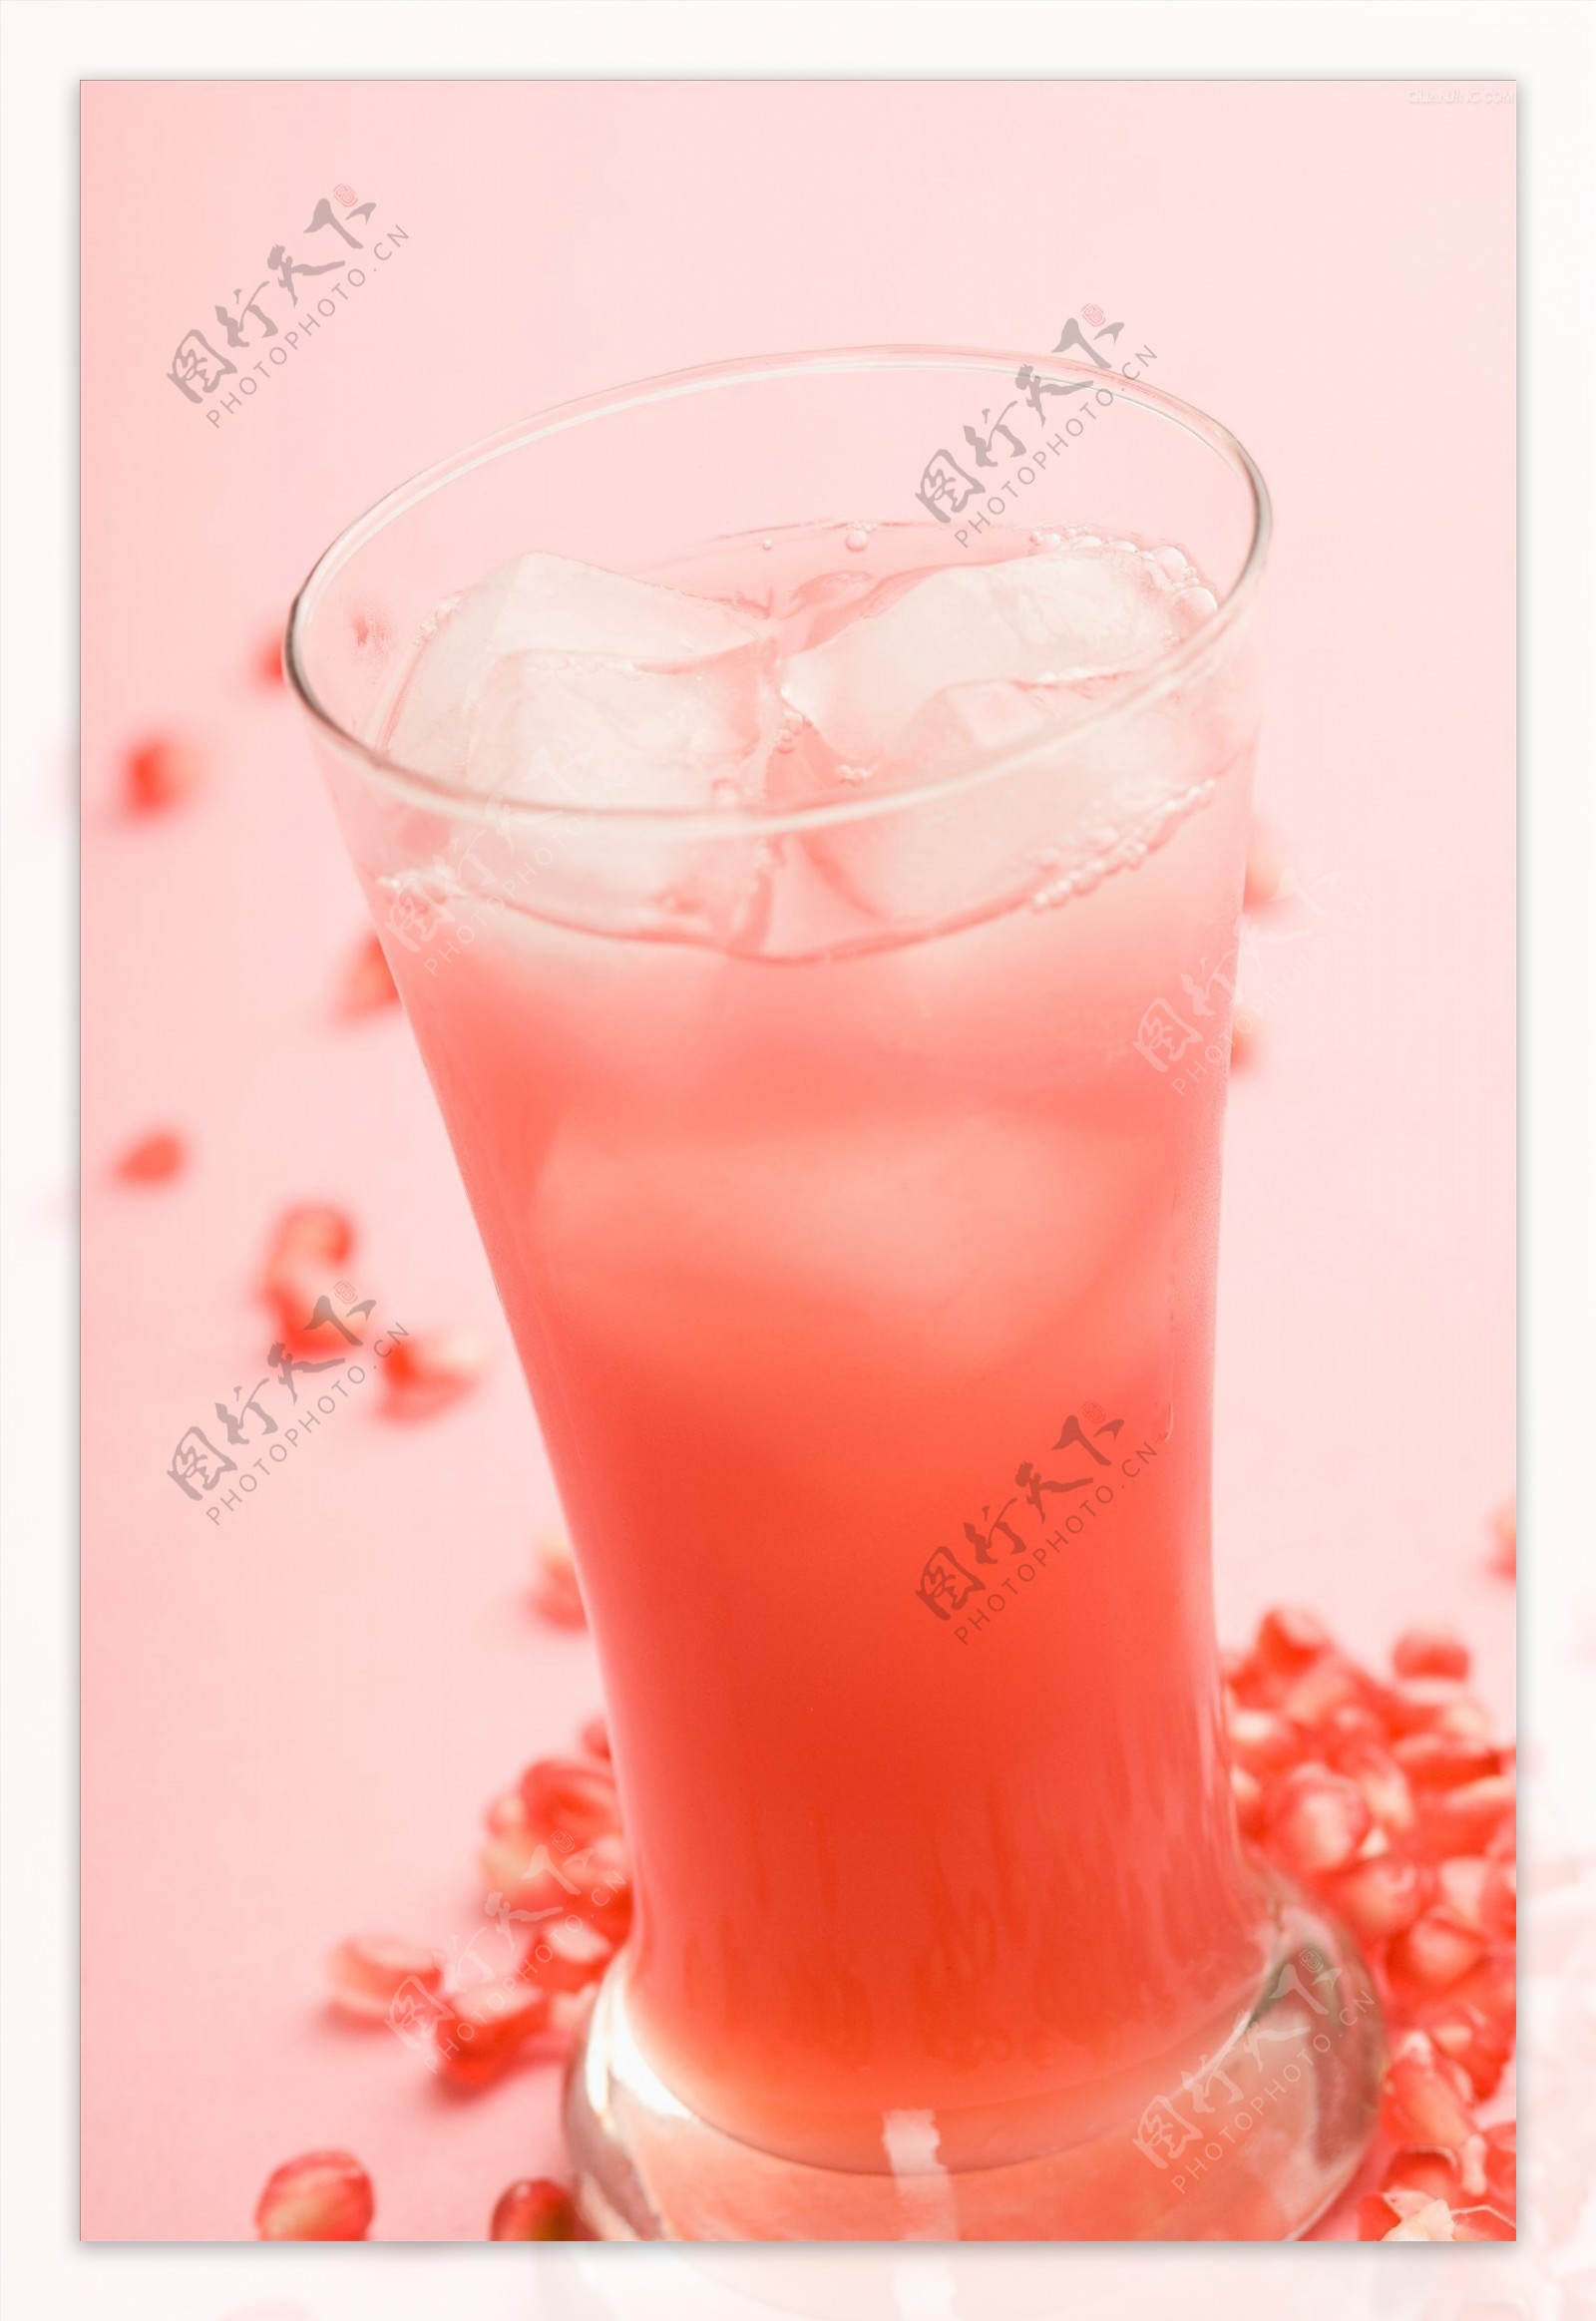 樱桃冰水果汁图片